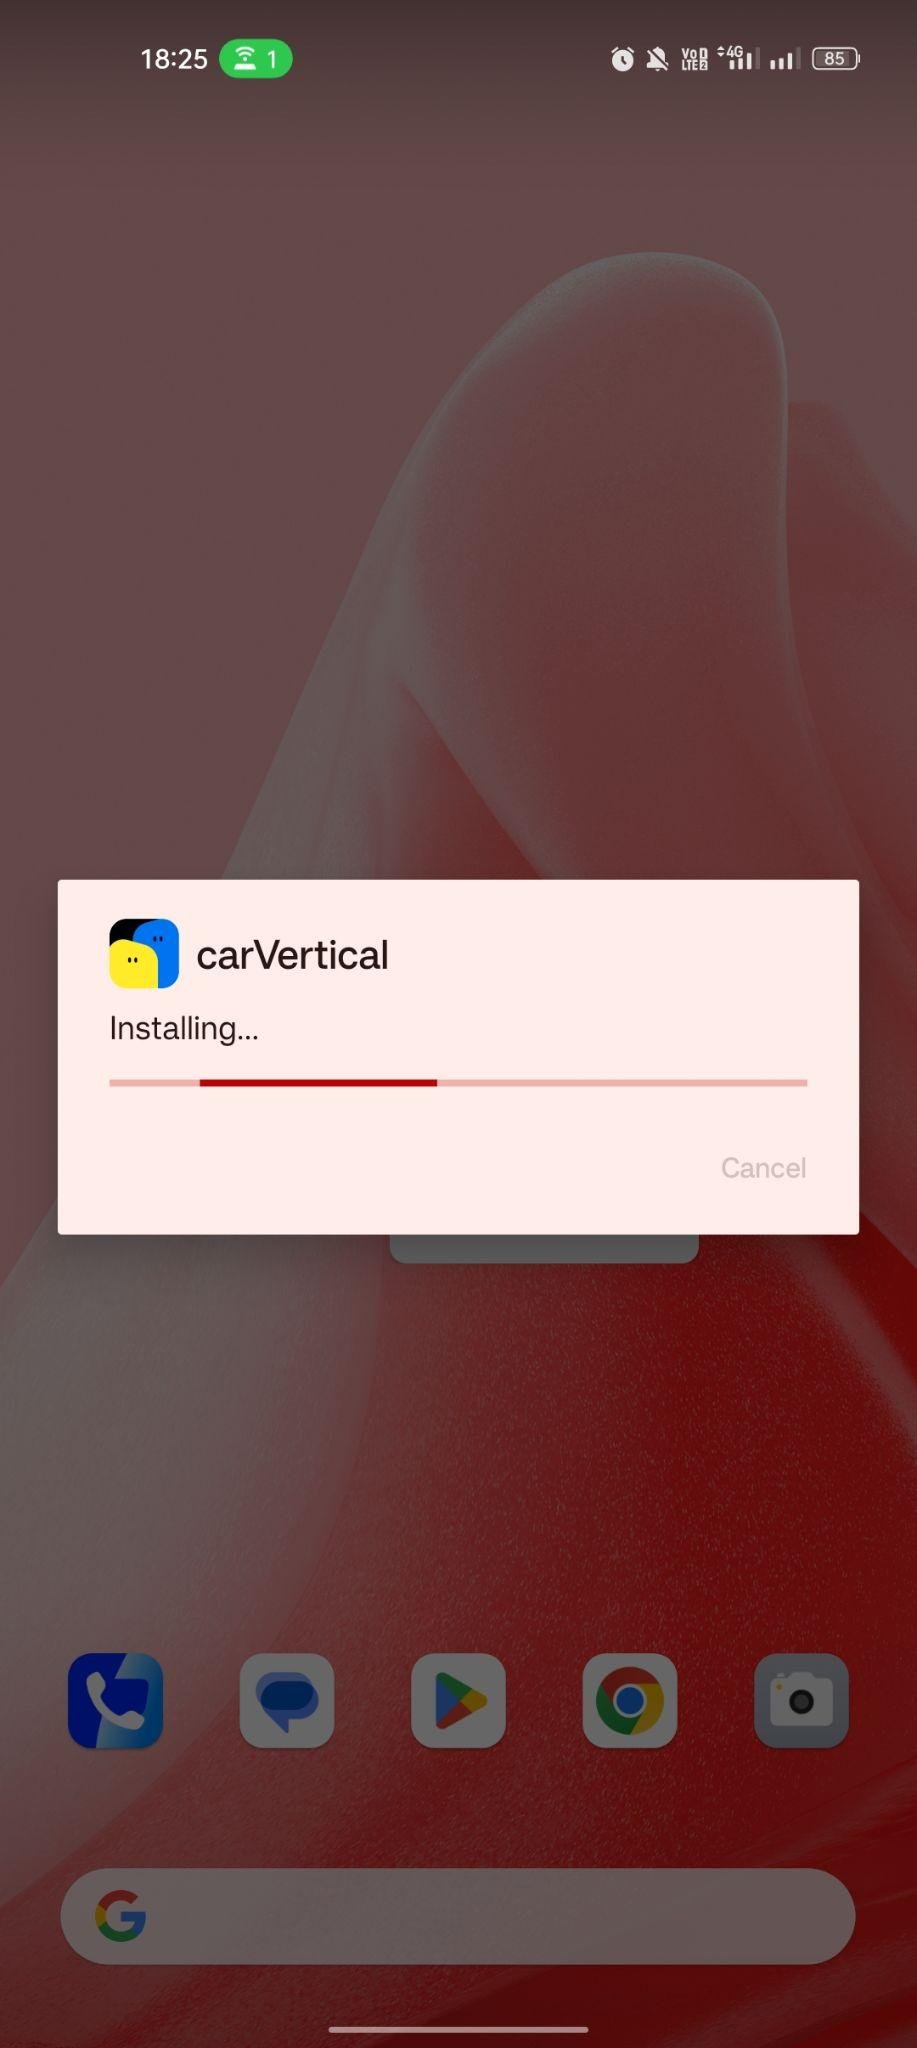 carVertical apk installing